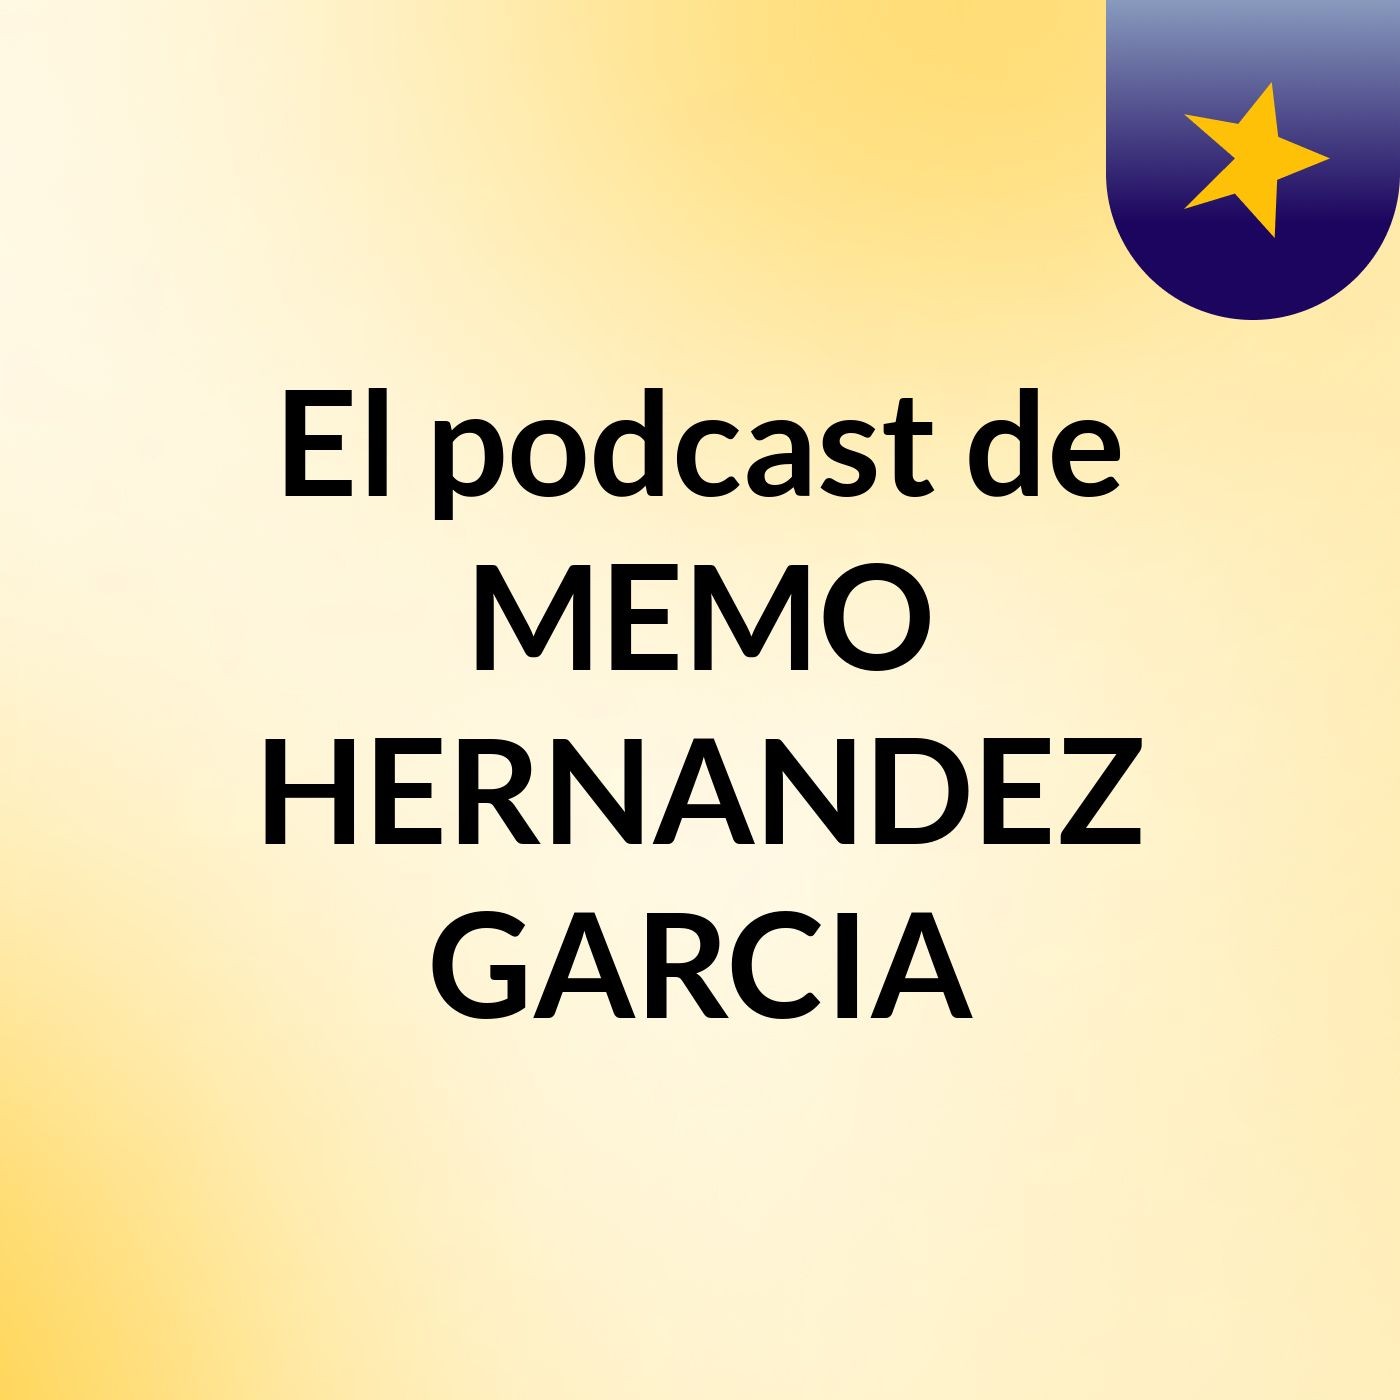 El podcast de MEMO HERNANDEZ GARCIA